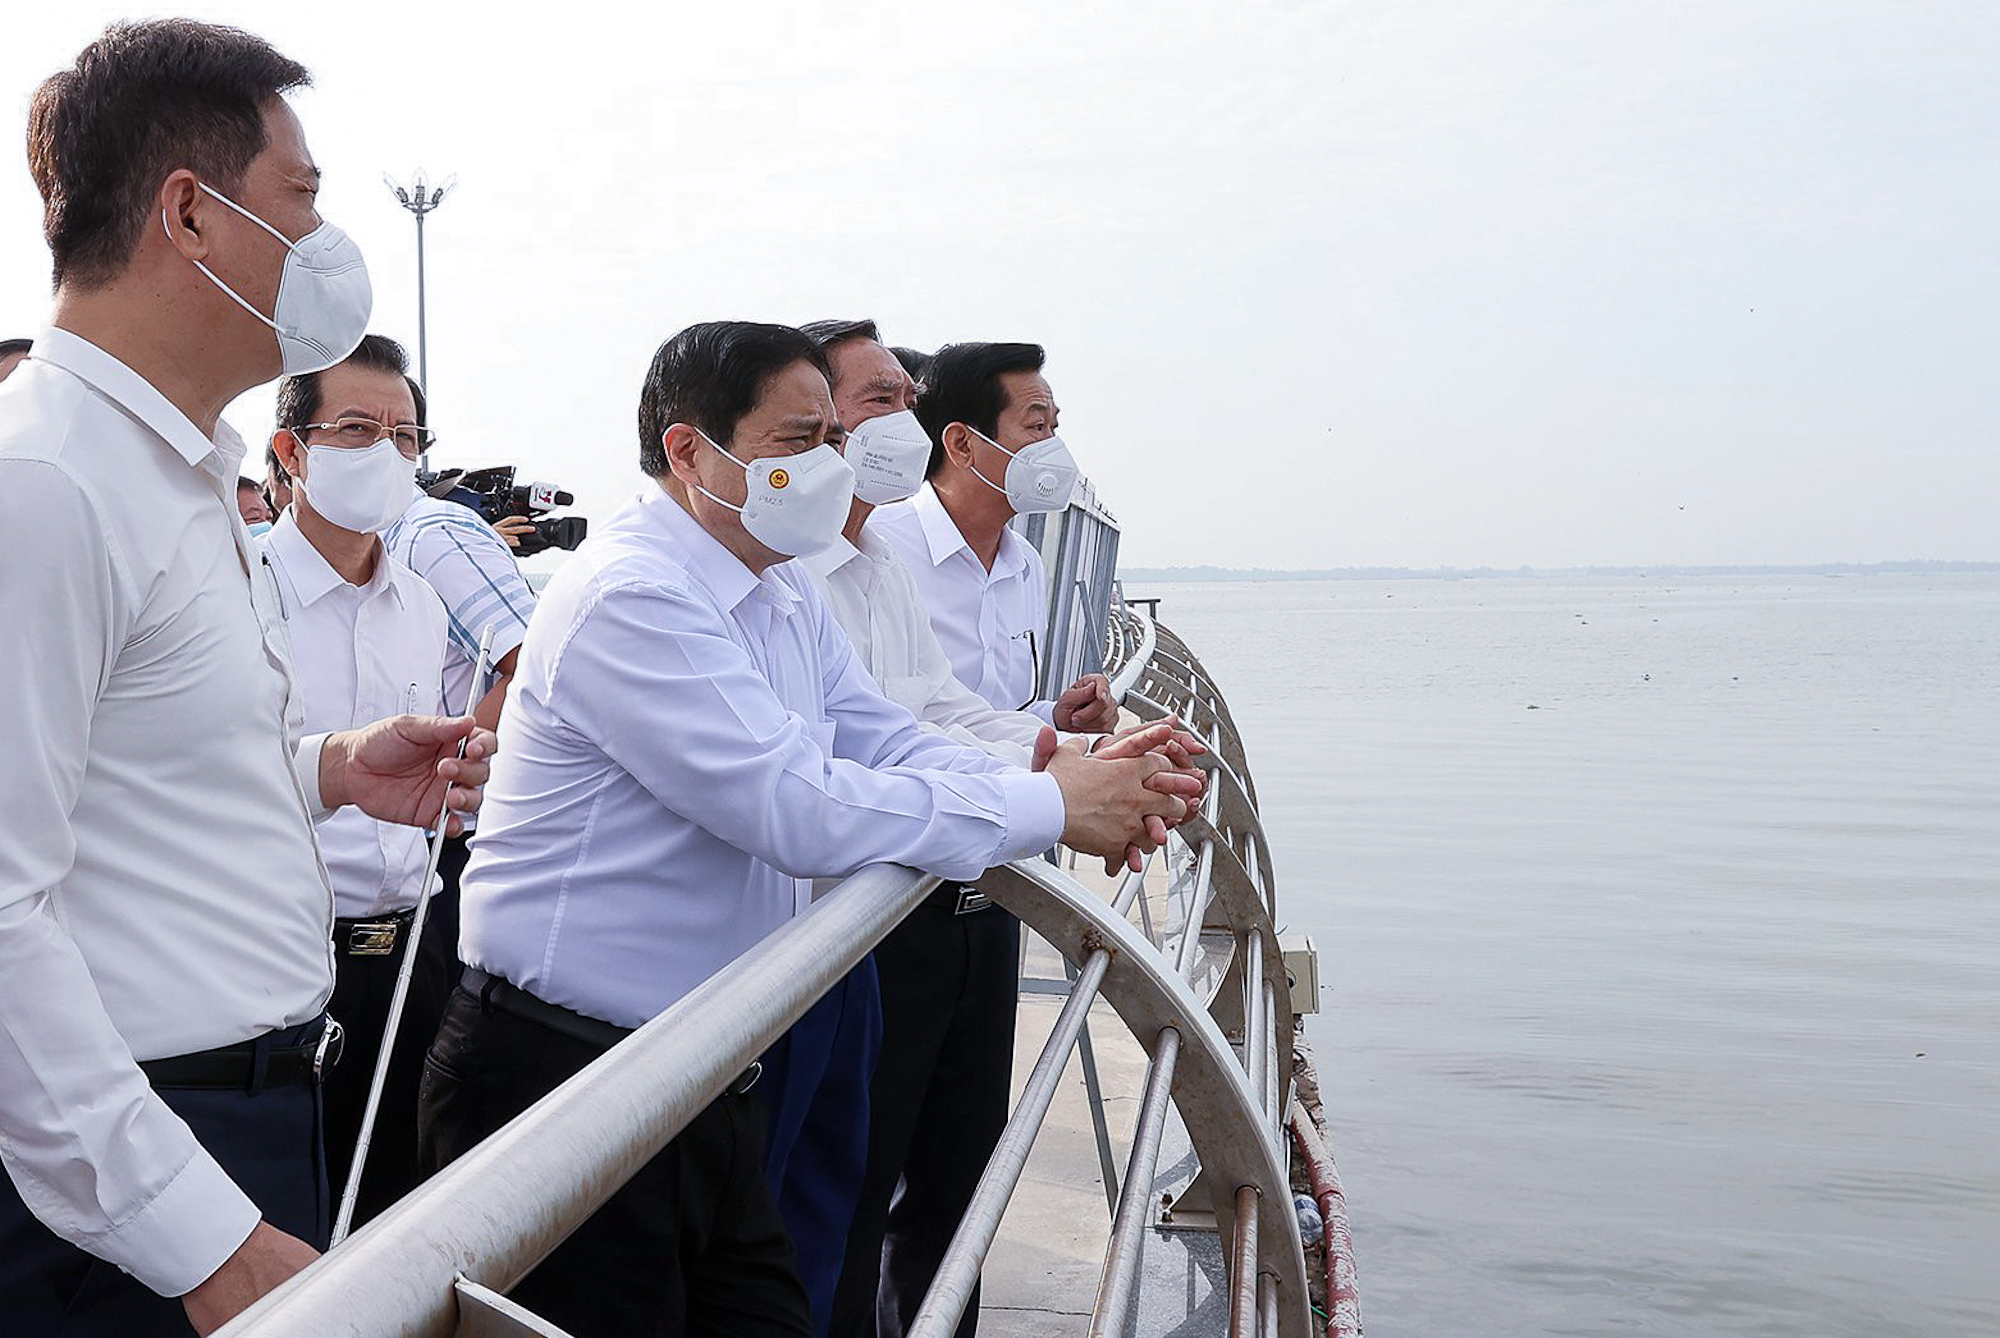 Trước khi chủ trì Hội nghị, Thủ tướng đi kiểm tra các dự án đường ven biển của tỉnh, hệ thống các công trình thủy lợi, dự án cấp điện cho các xã đảo của tỉnh Kiên Giang và điều chỉnh quy hoạch chung thành phố Rạch Giá.